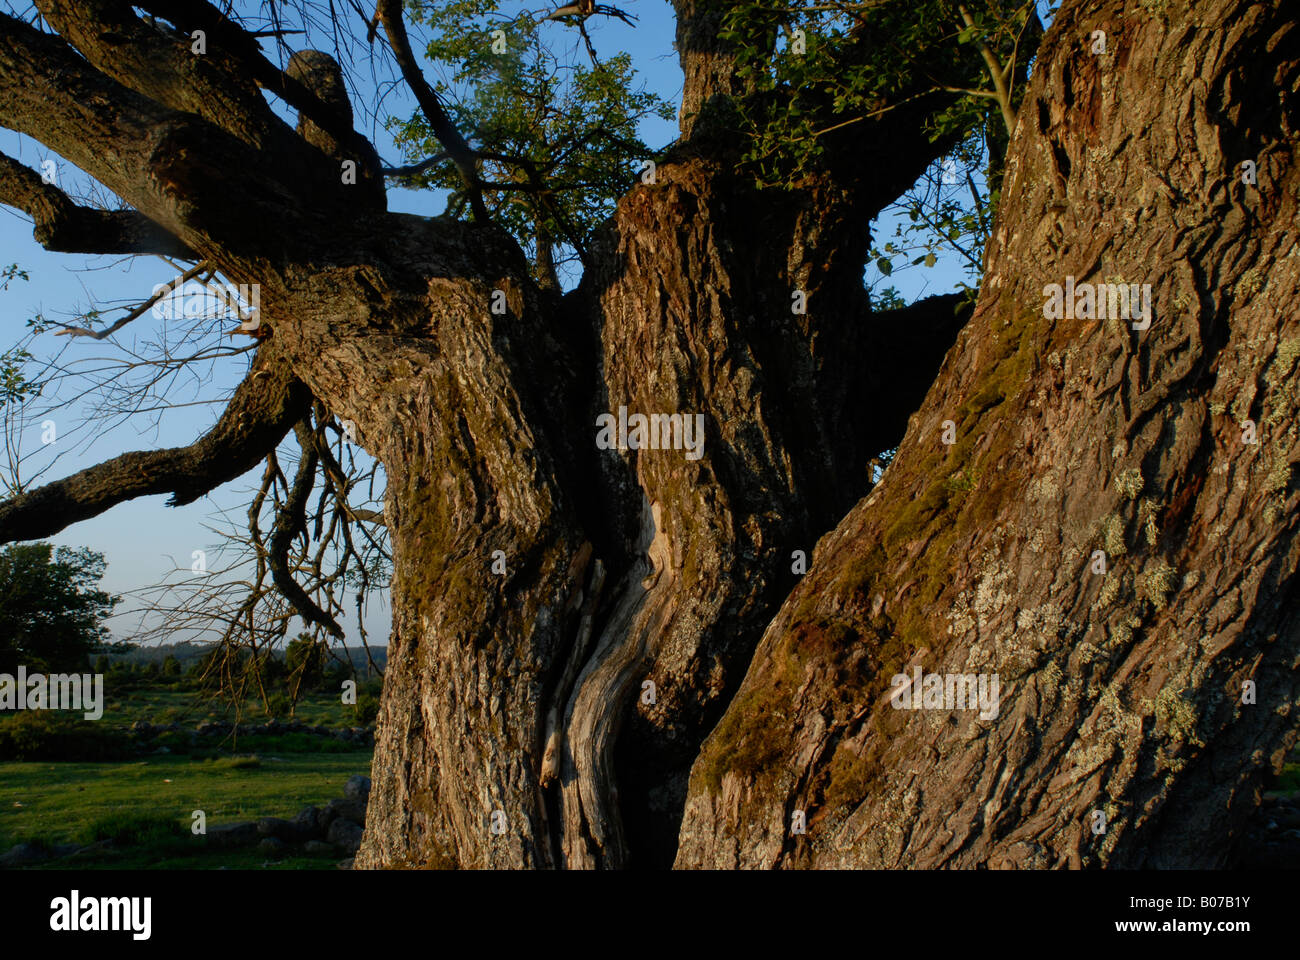 Oak tree, Sweden Stock Photo